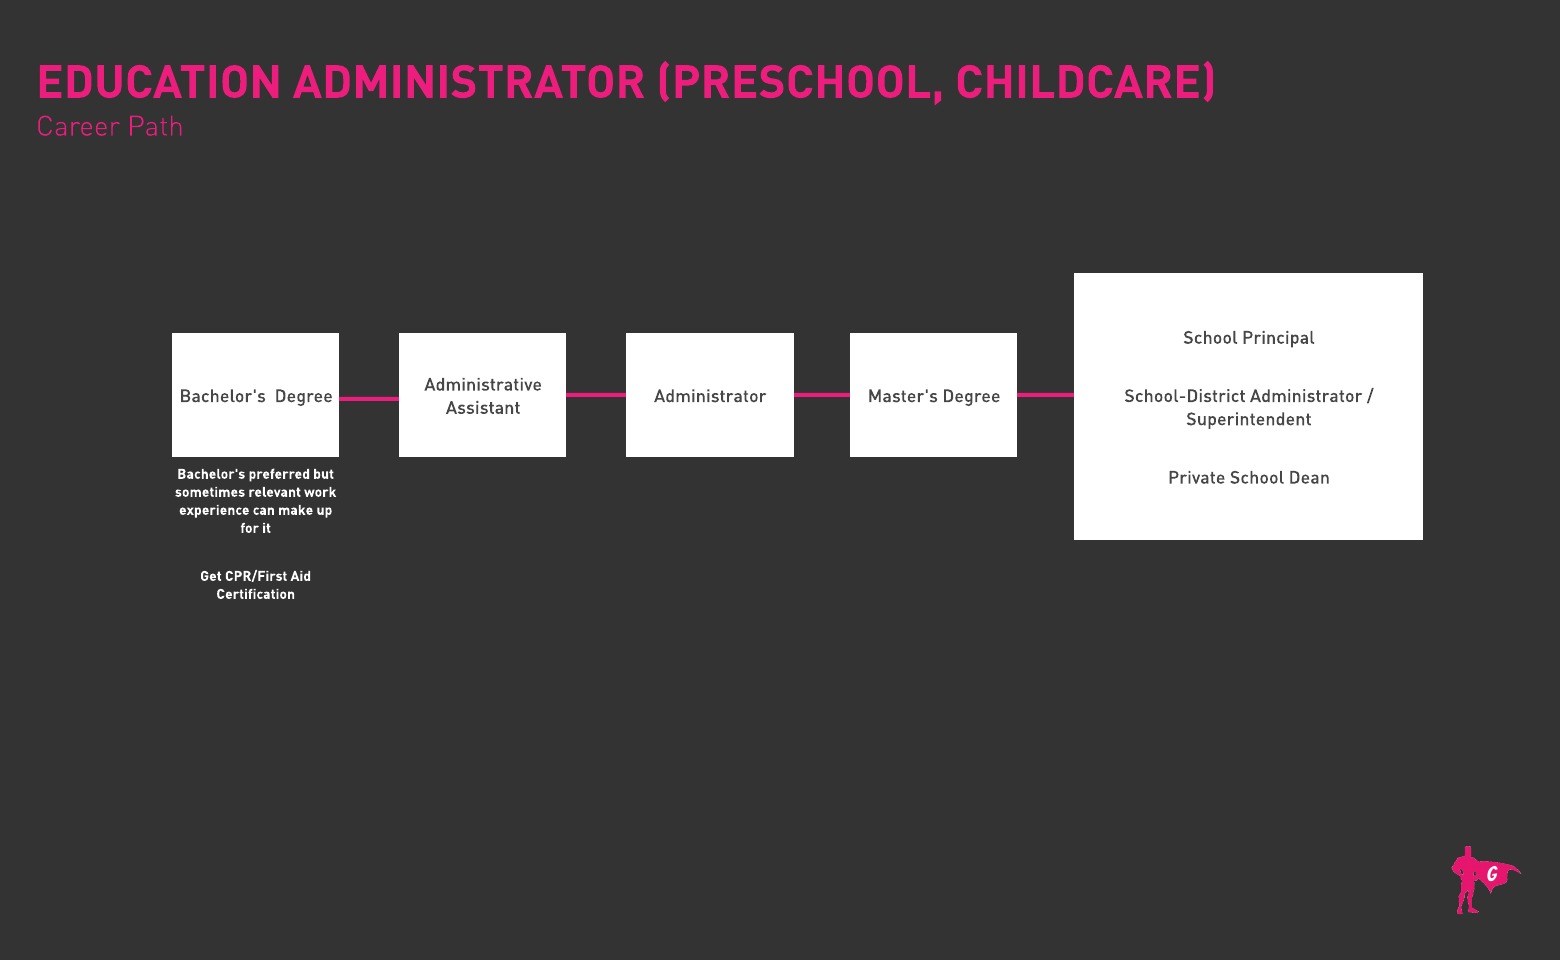 学前和儿童保育教育管理员 Gladeo 路线图